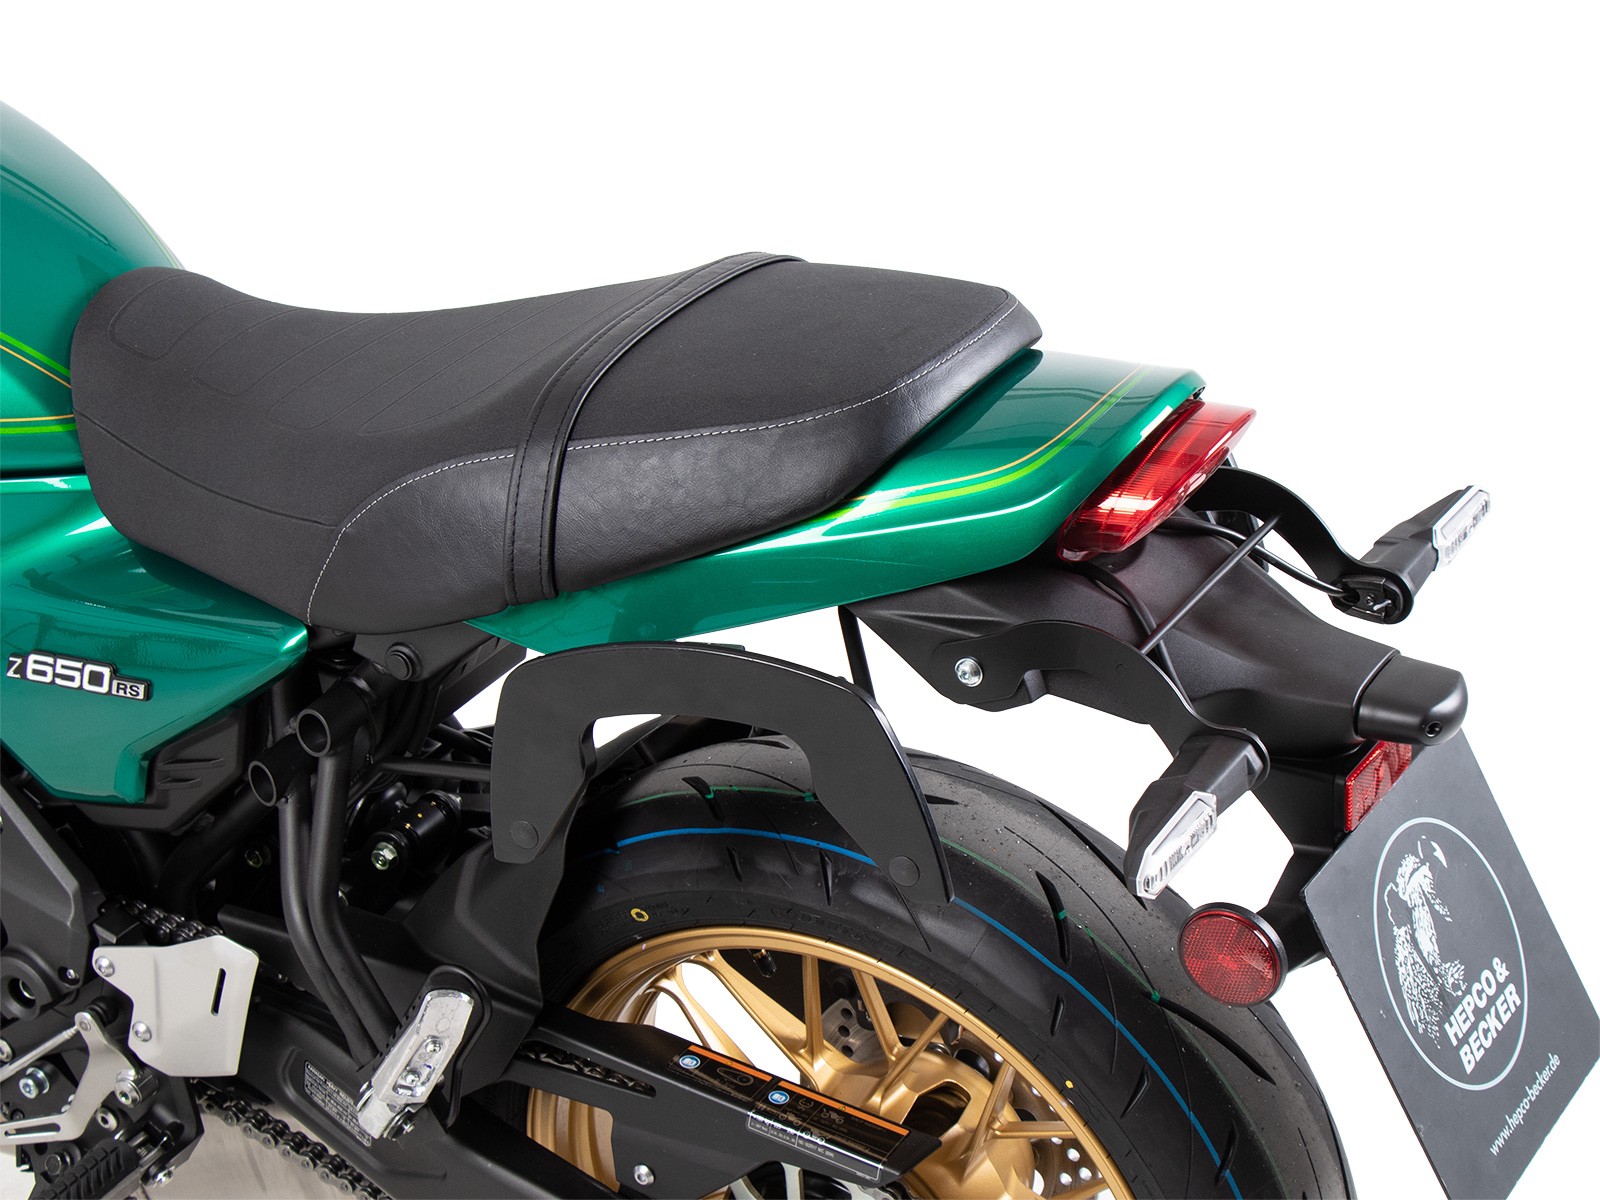 Aveko Borsa Manubrio Moto per CB650 R,Touch Screen Borsa per Forcella  Anteriore Moto,Borsa da Navigazione per Volante da Moto, Borsa per Telefono